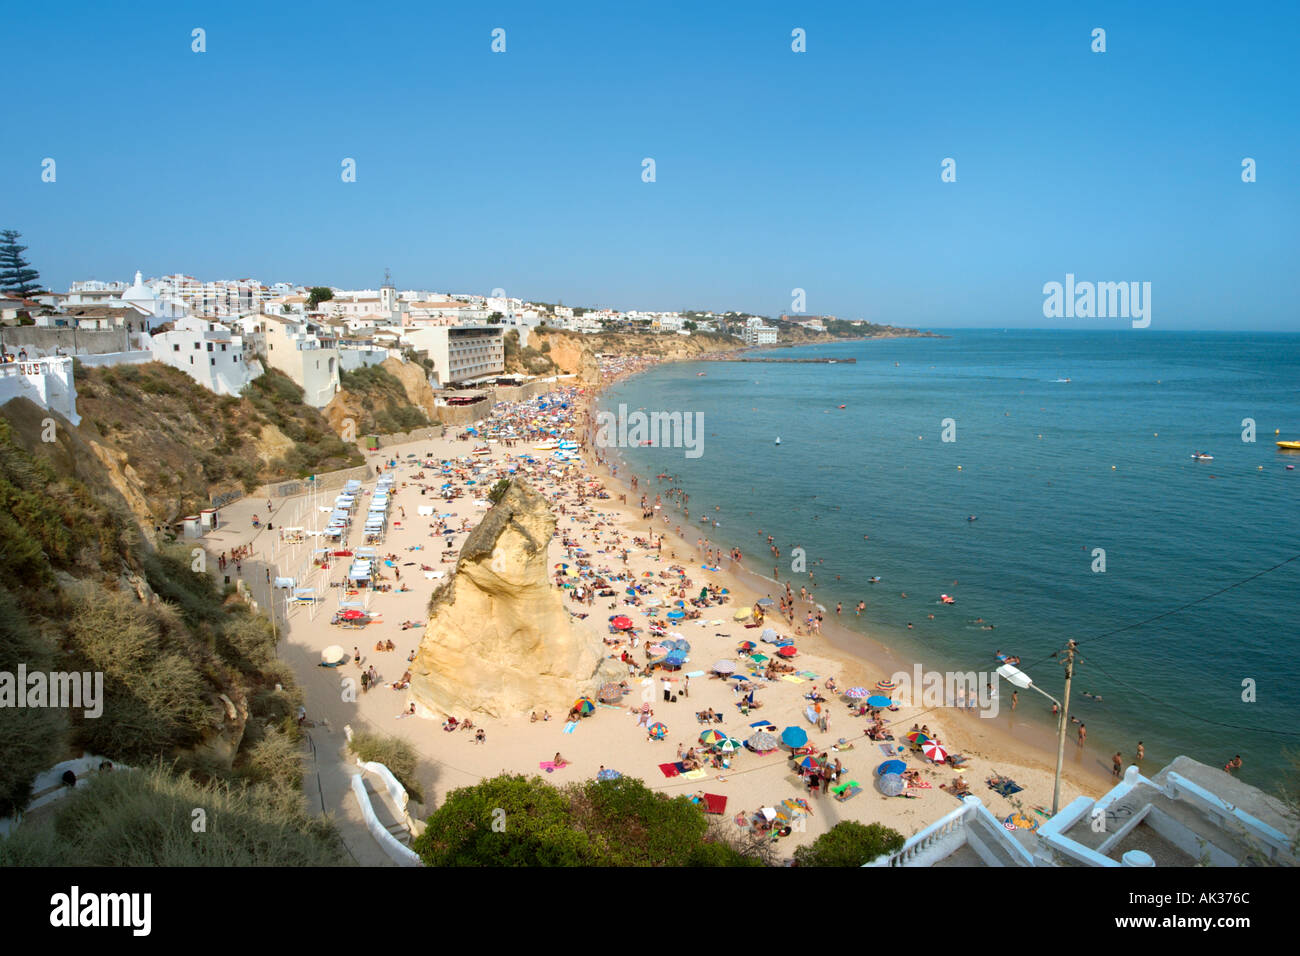 La spiaggia principale del villaggio turistico di Albufeira, Algarve, PORTOGALLO Foto Stock